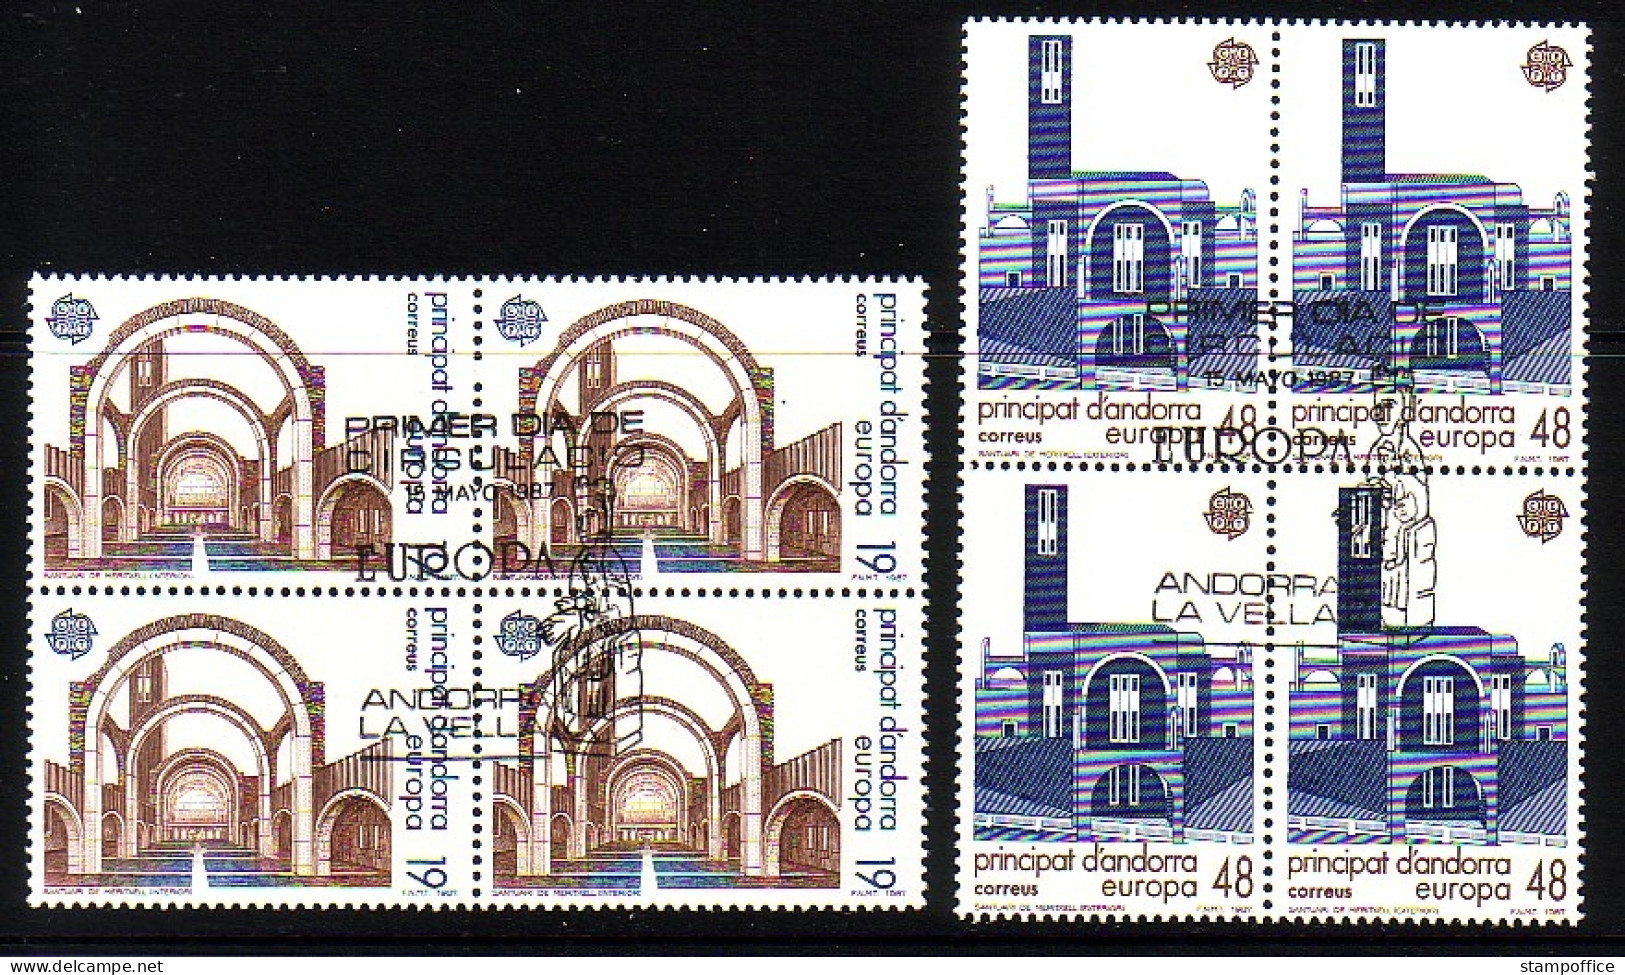 ANDORRA SPANISCH MI-NR. 193-194 GESTEMPELT(USED) 4er BLOCK EUROPA 1987 MODERNE ARCHITEKTUR KIRCHEN - 1987